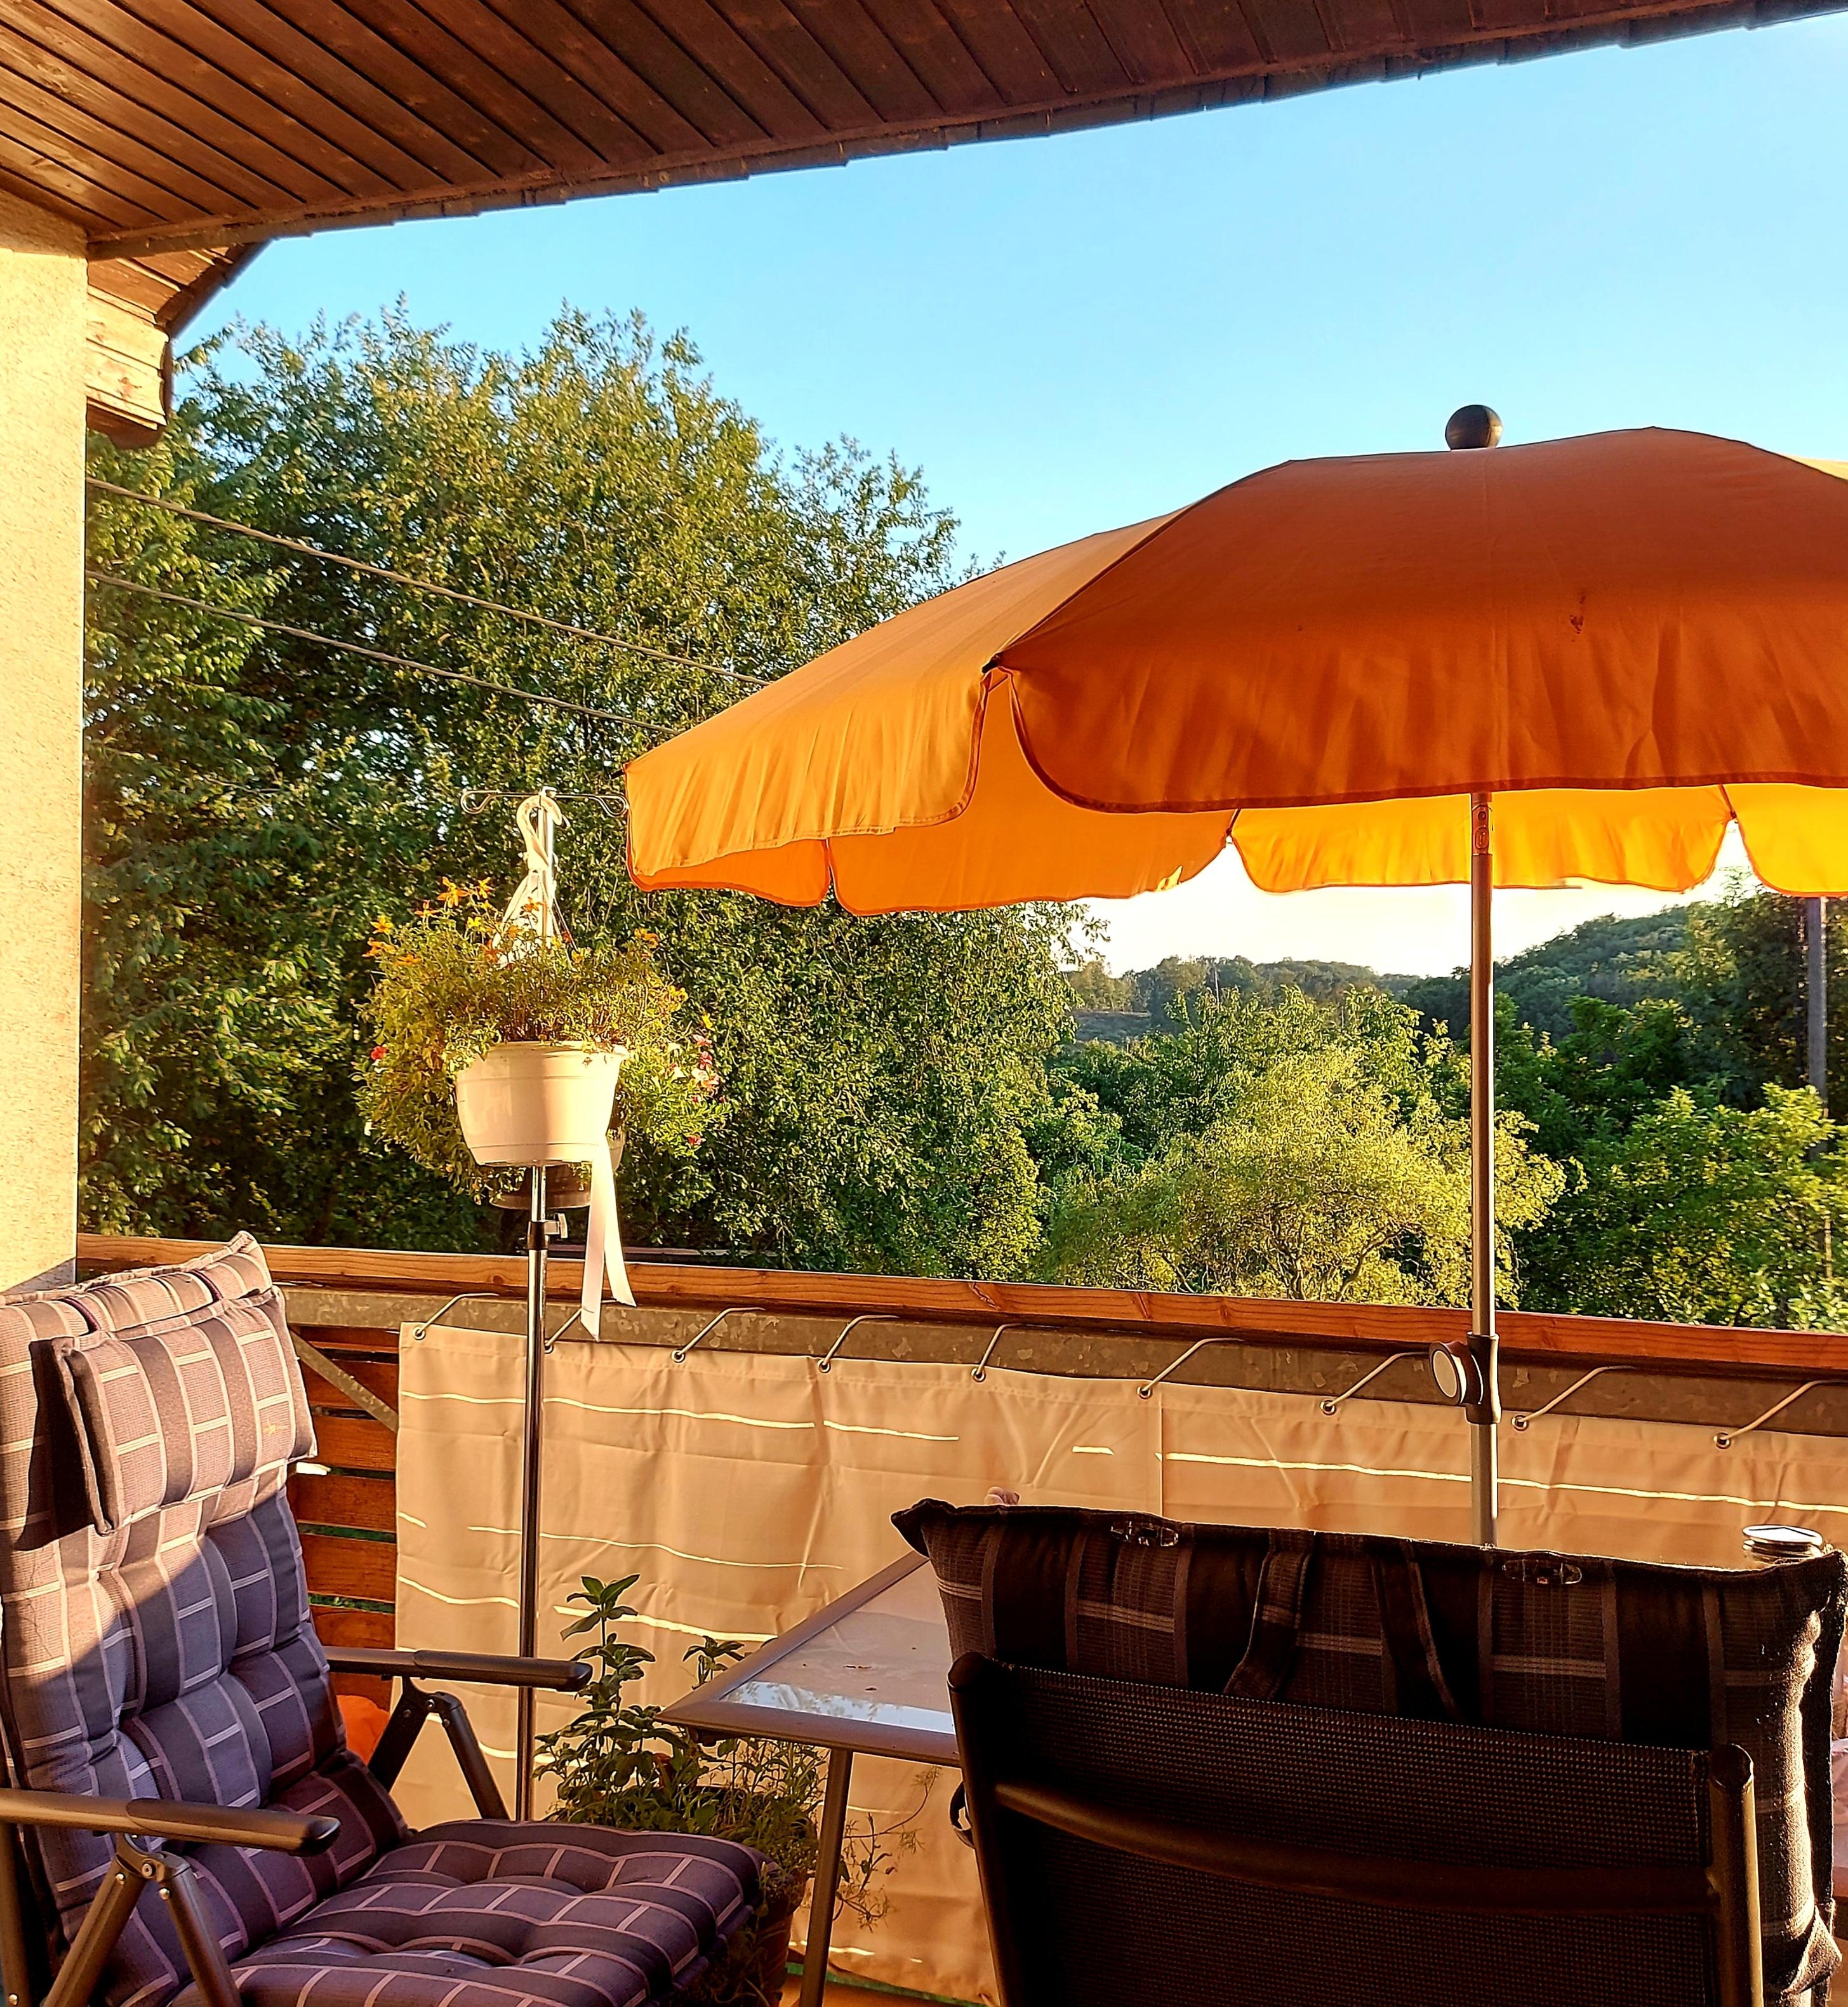 Den Urlaub auf Balkonien genießen, anstatt in die Ferne zu fliegen. 

#grünerleben #balkon #sommer #summerfeeling 